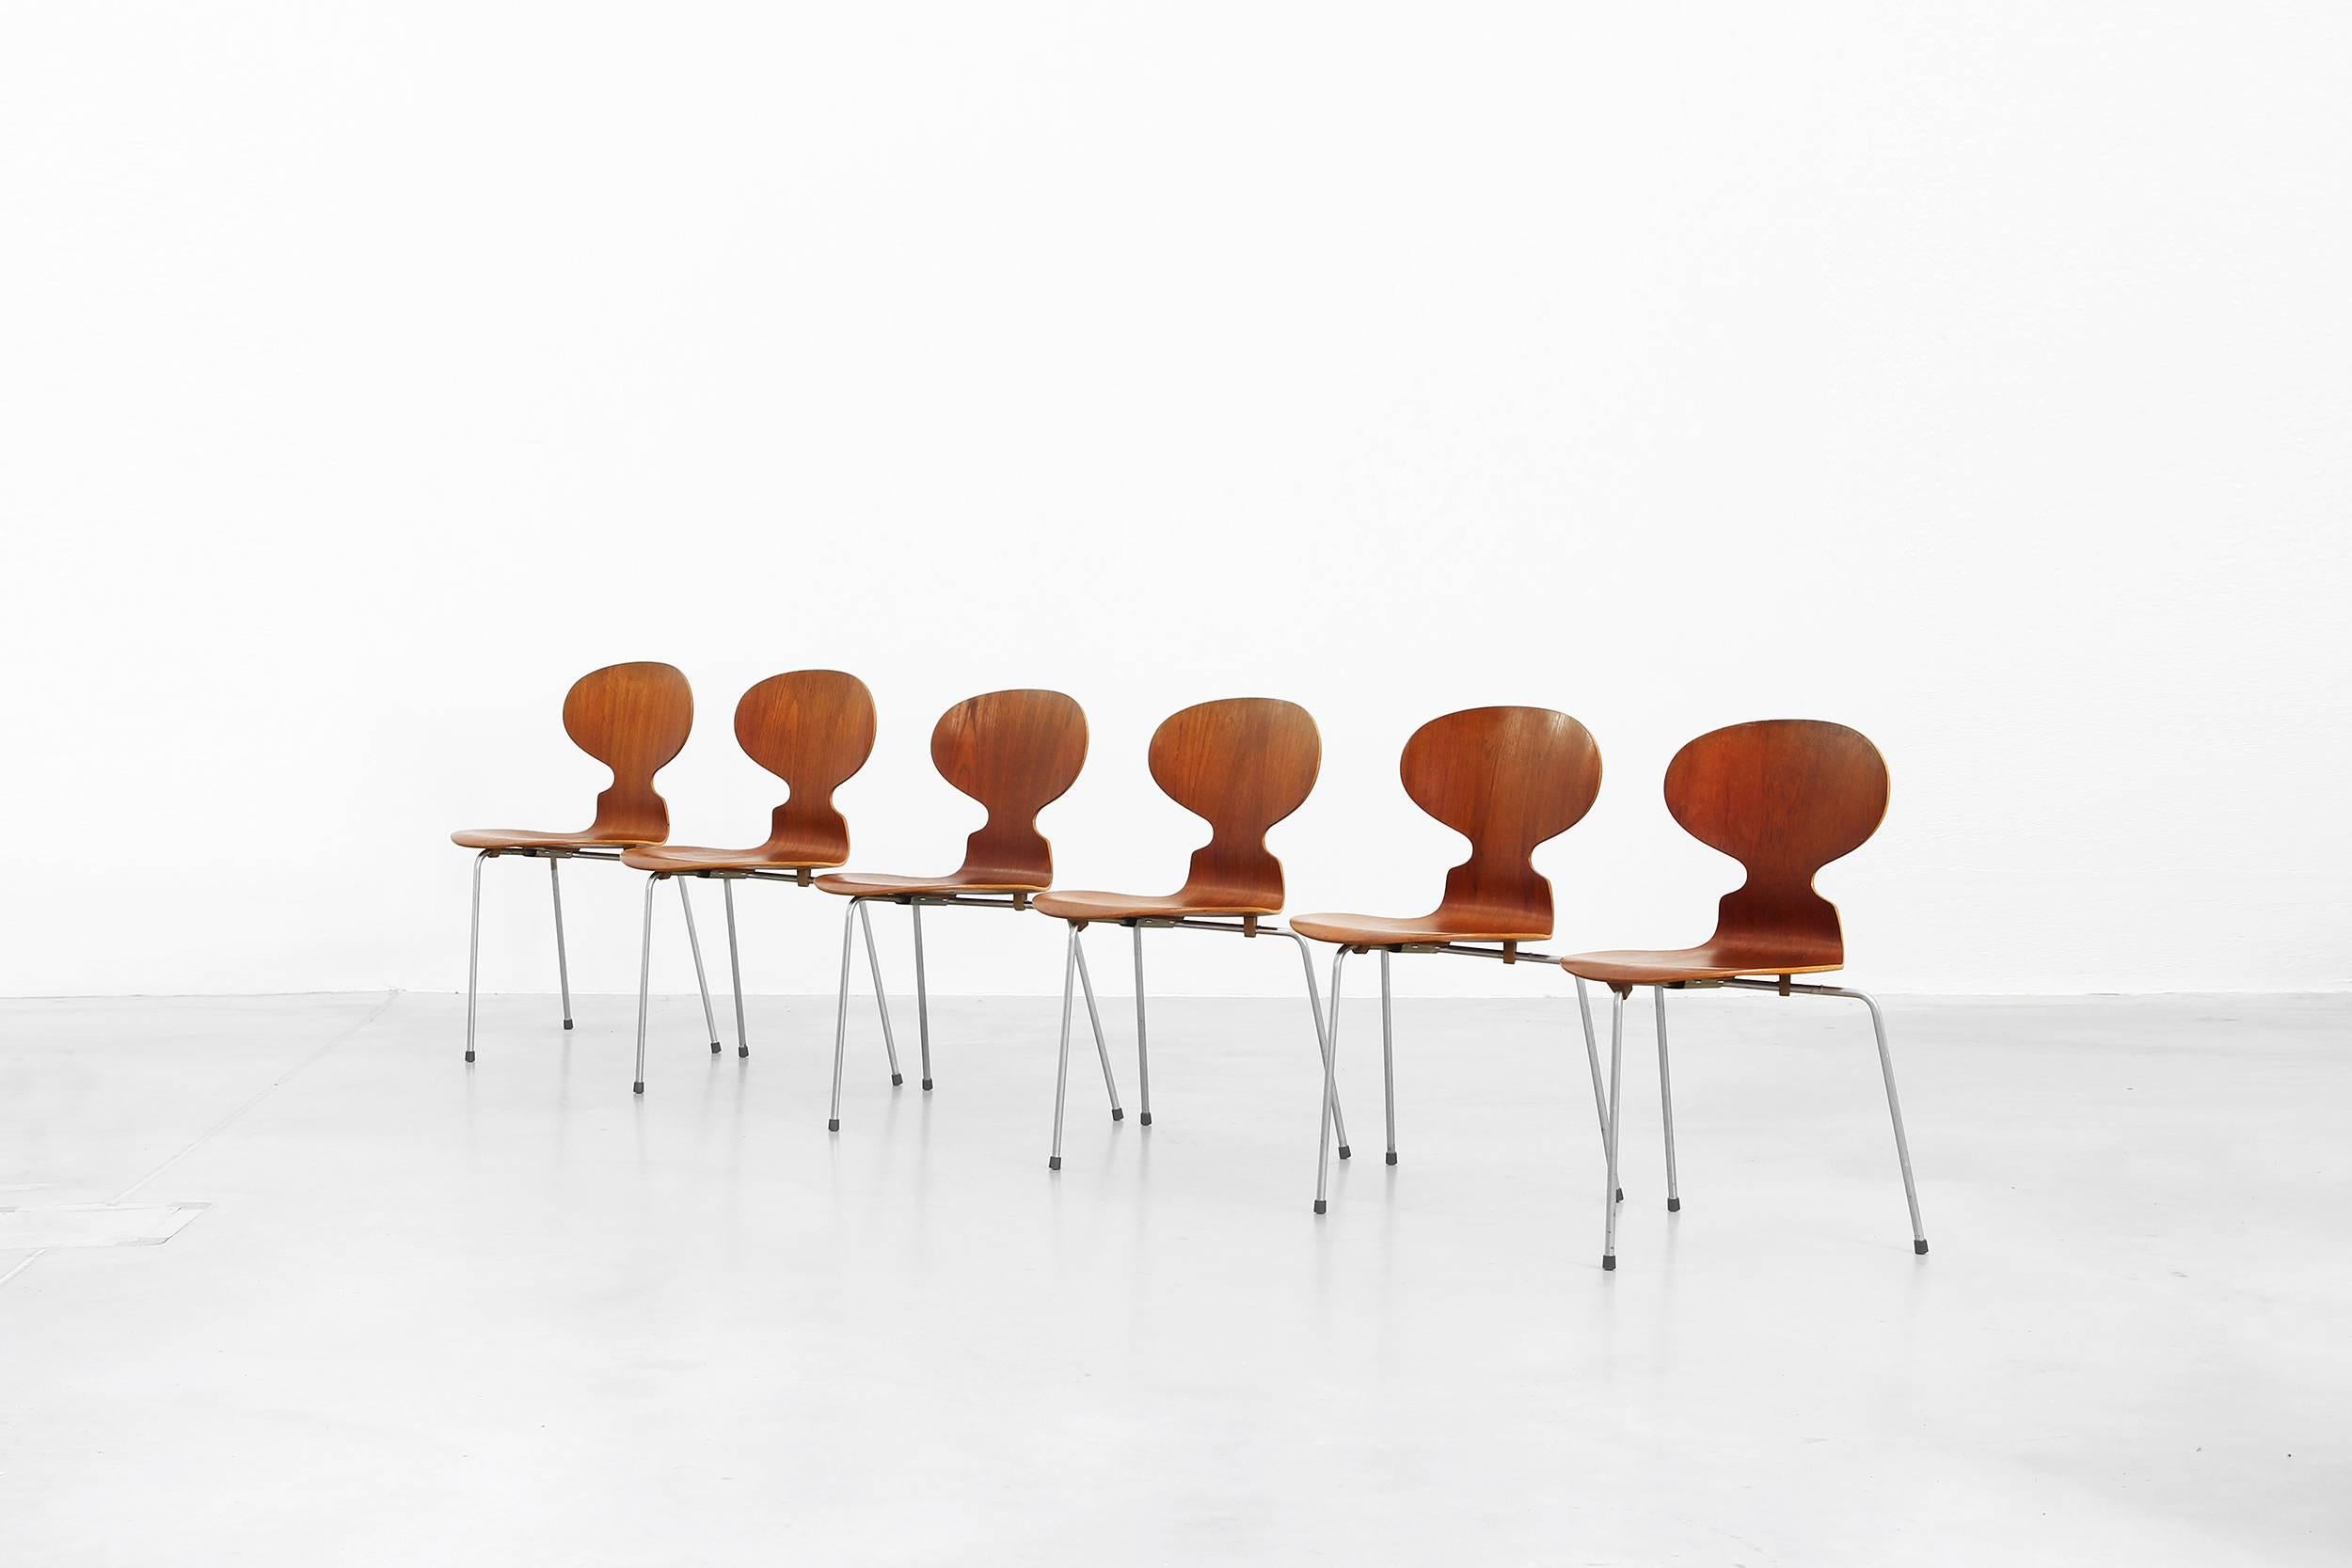 Un ensemble de six chaises Fourmi Mod. 3100 conçues par Arne Jacobsen pour Fritz Hansen en 1952, fabriquées au Danemark. Toutes les chaises sont en teck et sont en bon état avec de petits signes d'utilisation, de petites abrasions, mais pas de